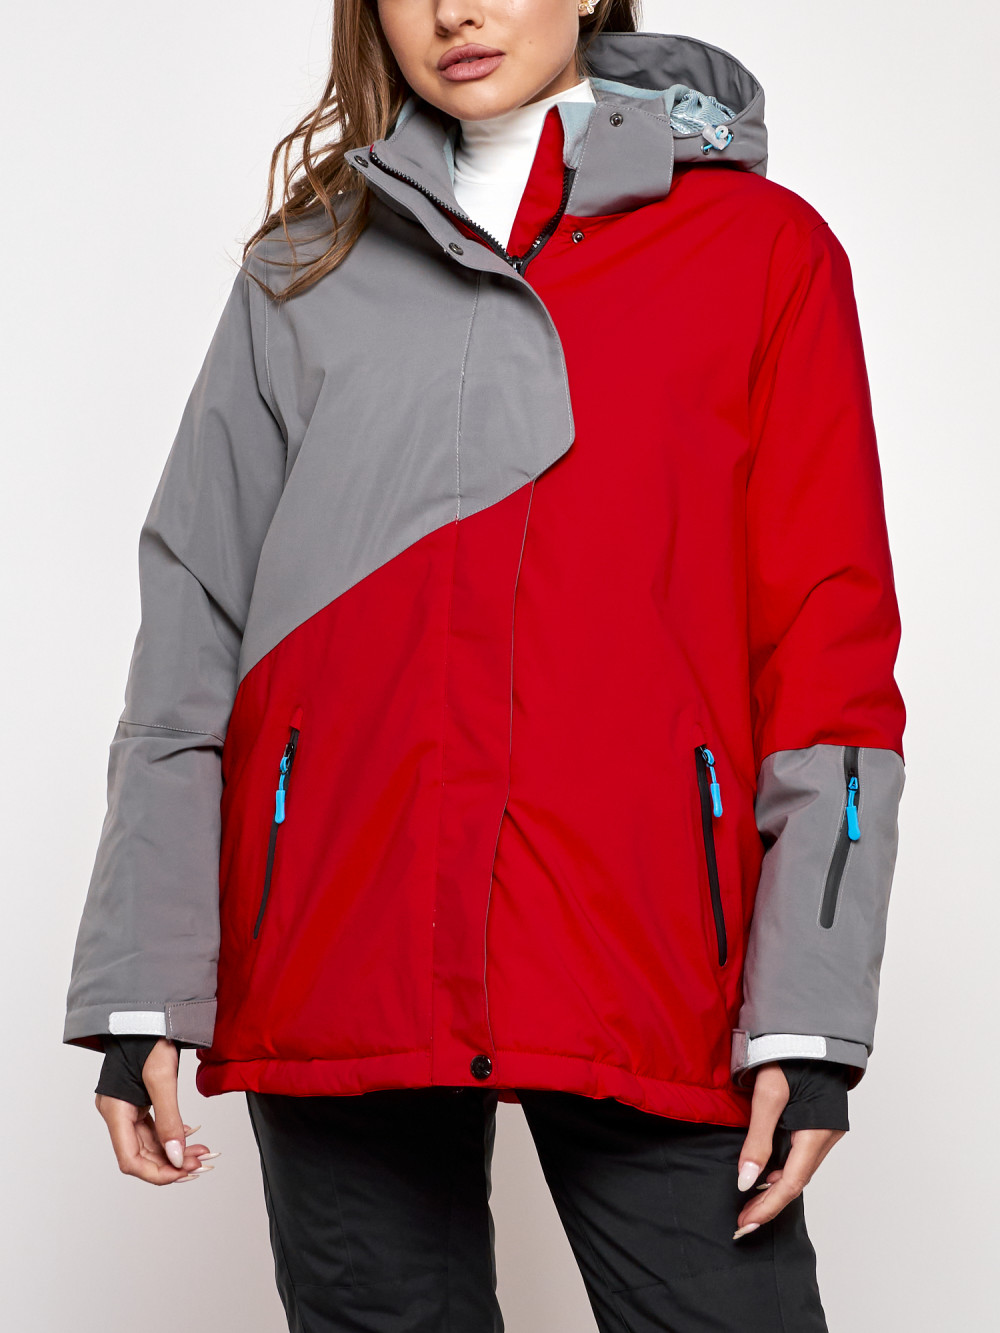 Горнолыжная куртка женская зимняя большого размера Chunmai AD2278Kr, 52